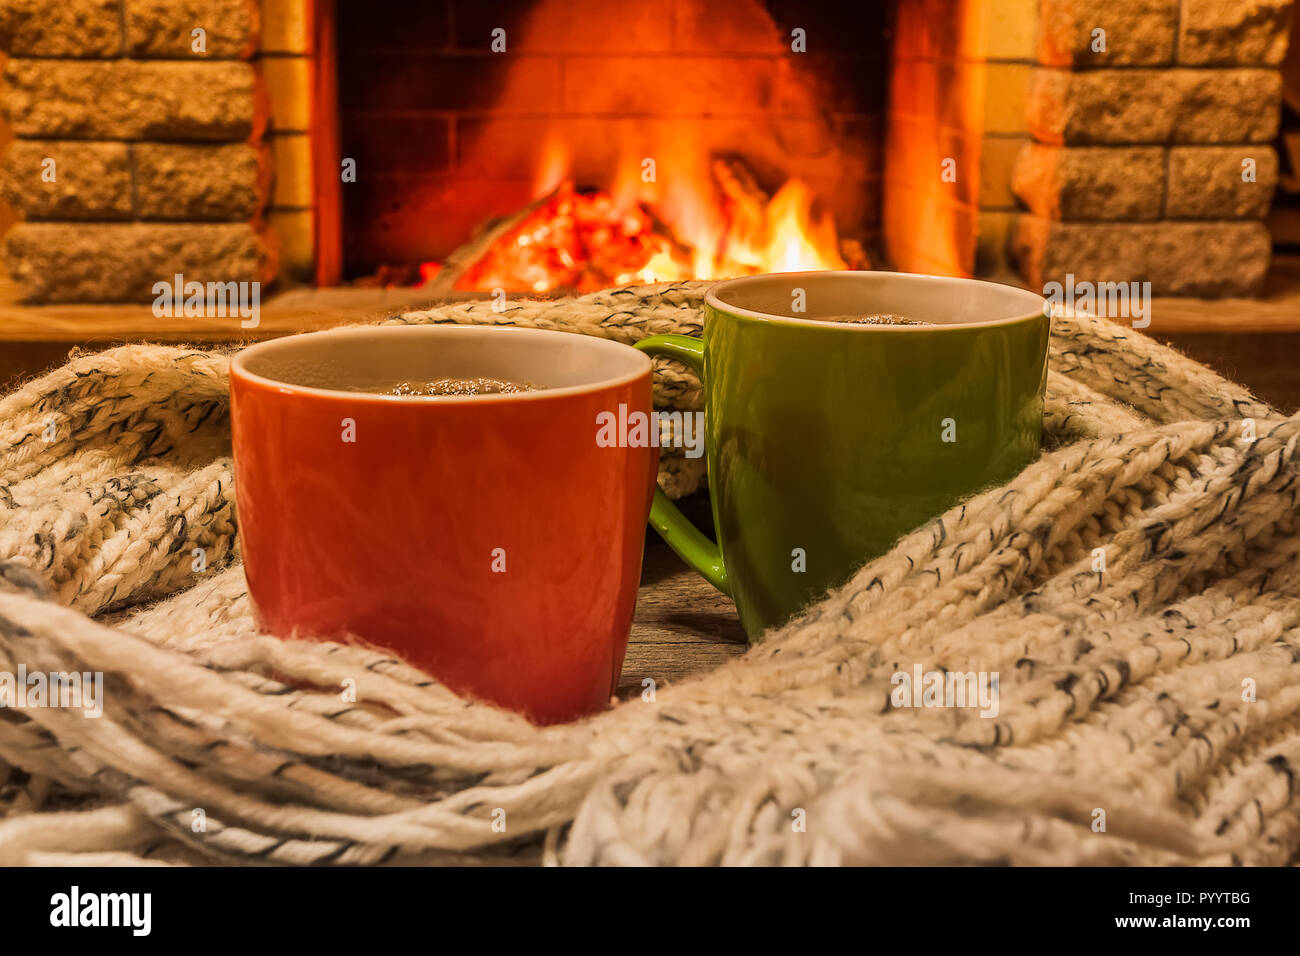 Für zwei Tassen heißen Tee oder Kaffee und gemütlich warmen Schal in der Nähe von Kamin, im Landhaus, winter Urlaub, horizontal. Stockfoto